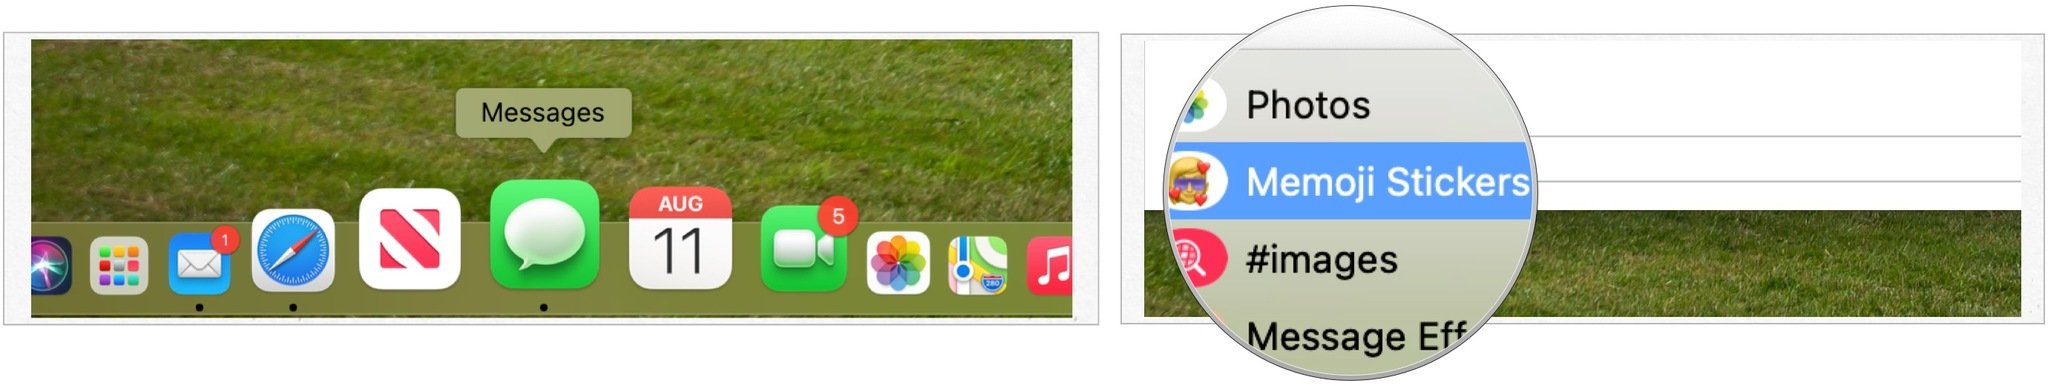 Pour utiliser les autocollants Memoji sur Mac, cliquez sur l'application Messages.  Choisissez ensuite une conversation existante ou démarrez-en une nouvelle.  Sélectionnez l'icône App Store à gauche de la boîte iMessage.  Choisissez les autocollants Memoji dans la liste de choix.